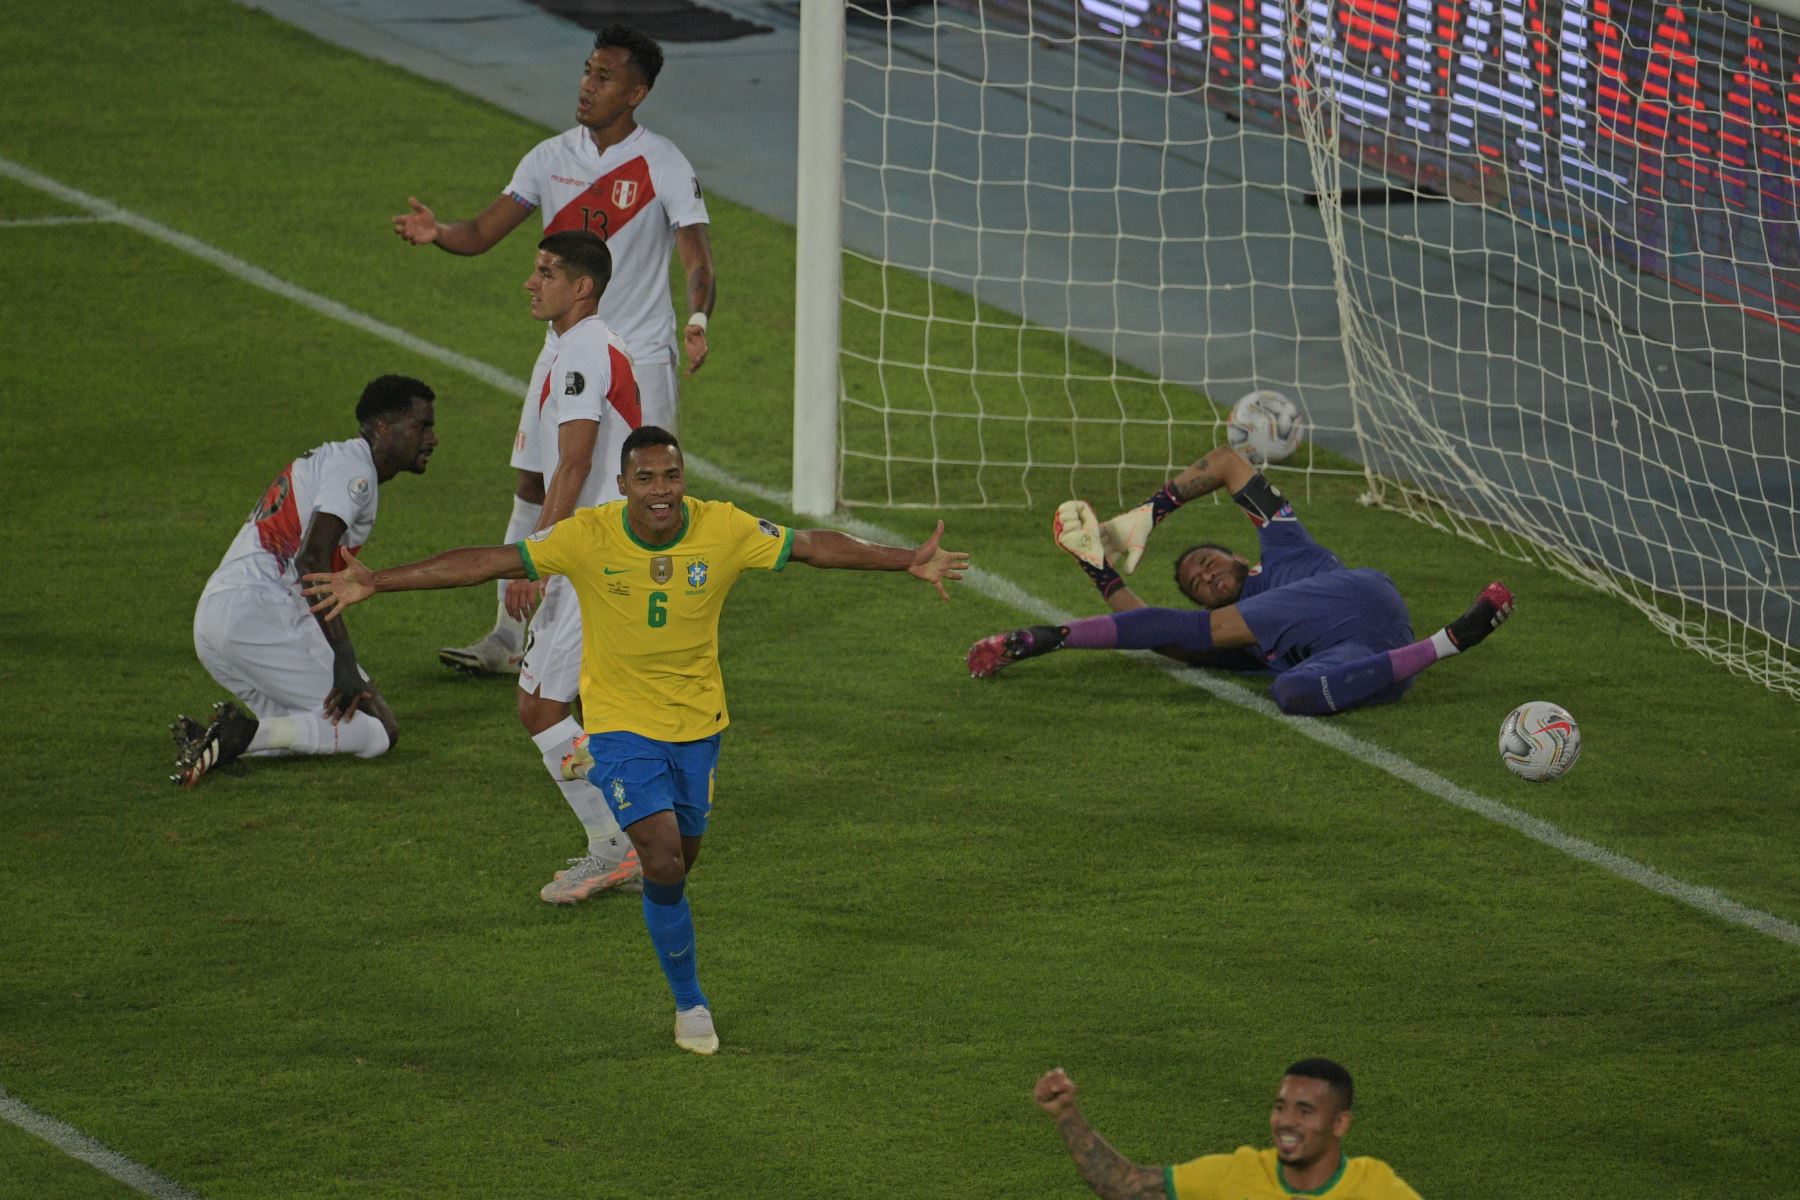 Alex Sandro de Brasil celebra tras anotar contra Perú durante el partido de la fase de grupos del torneo de fútbol Copa América, en el Estadio Nilton Santos de Río de Janeiro, Brasil. Foto: AFP